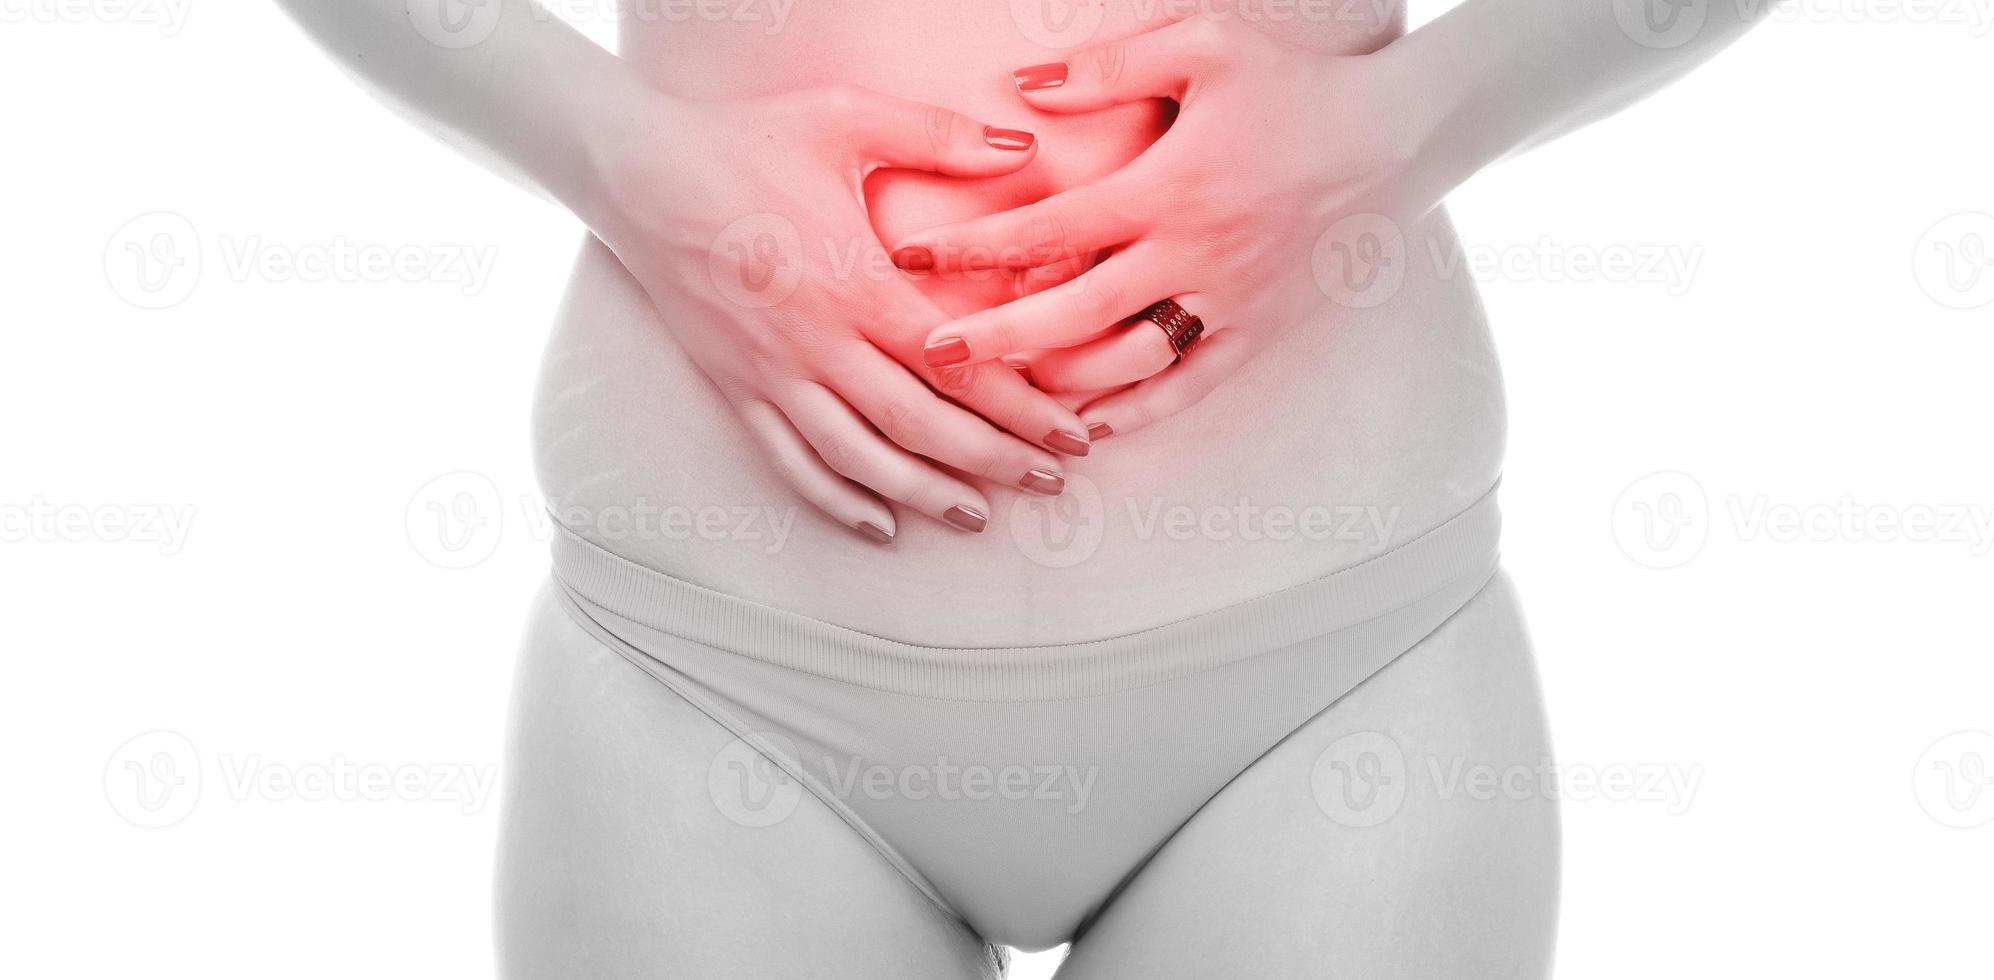 mujer joven que sufre de fuerte dolor abdominal. aislado sobre fondo blanco foto